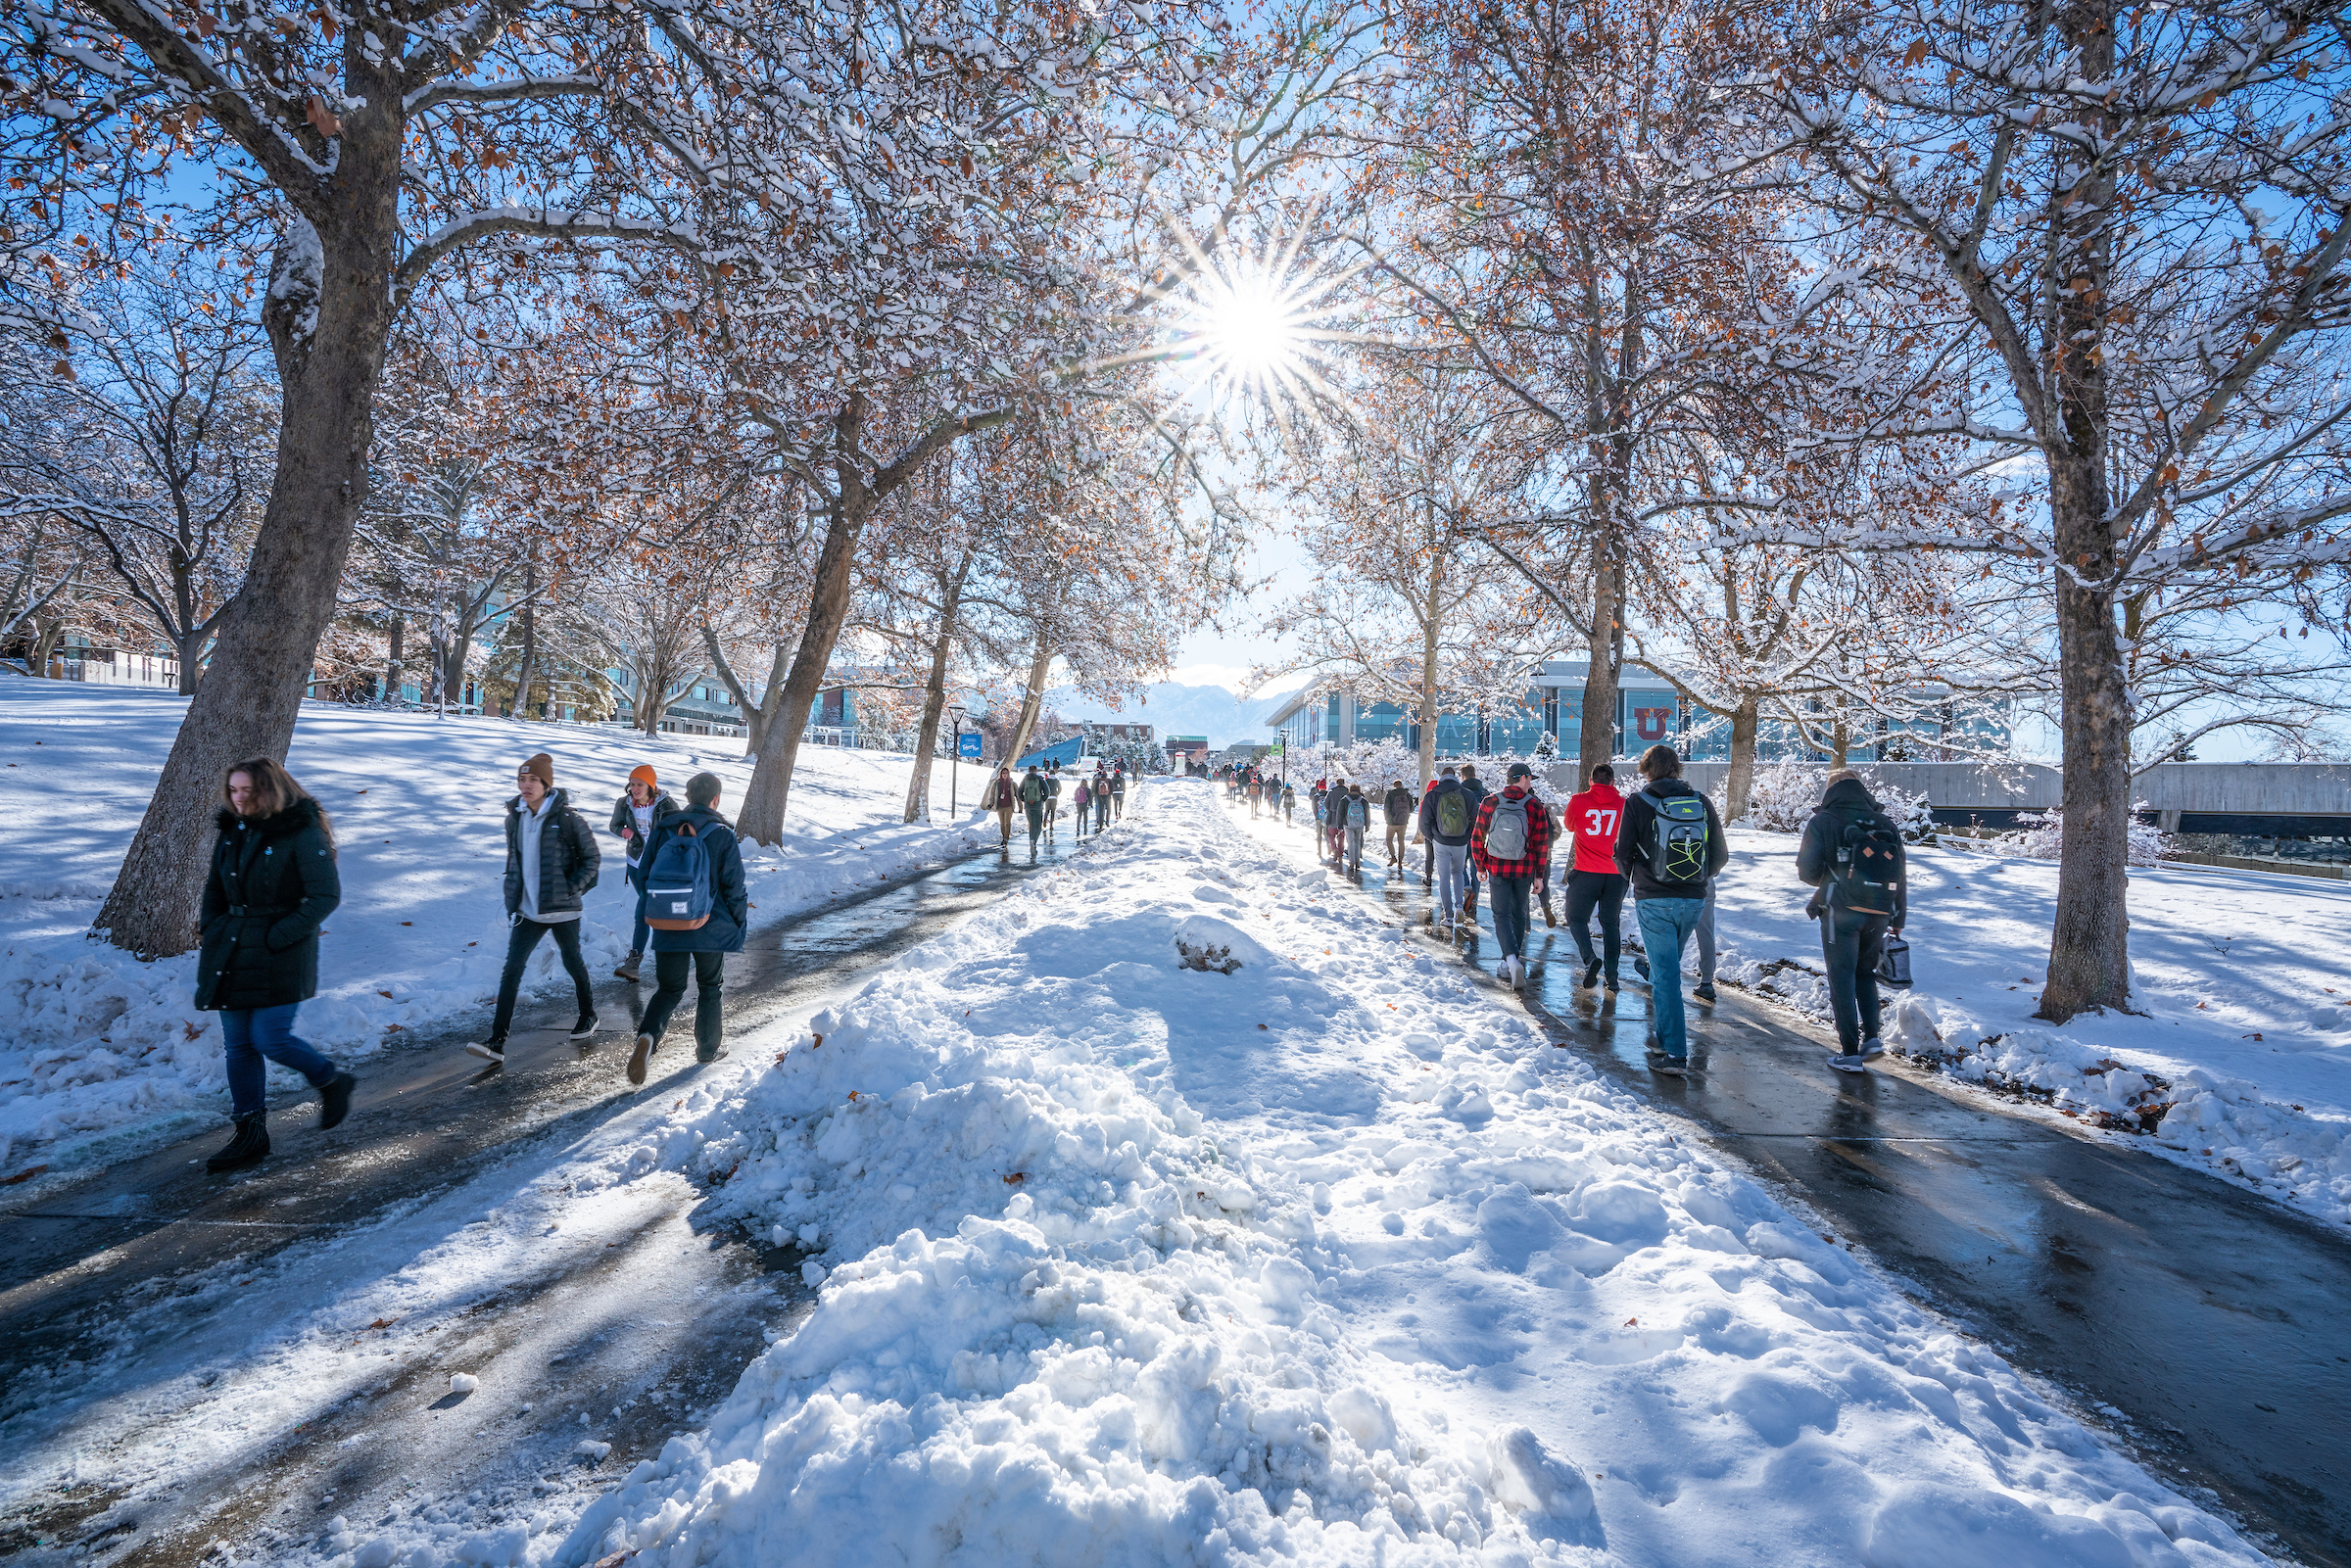 snowy outdoor sidewalk on the university of utah campus